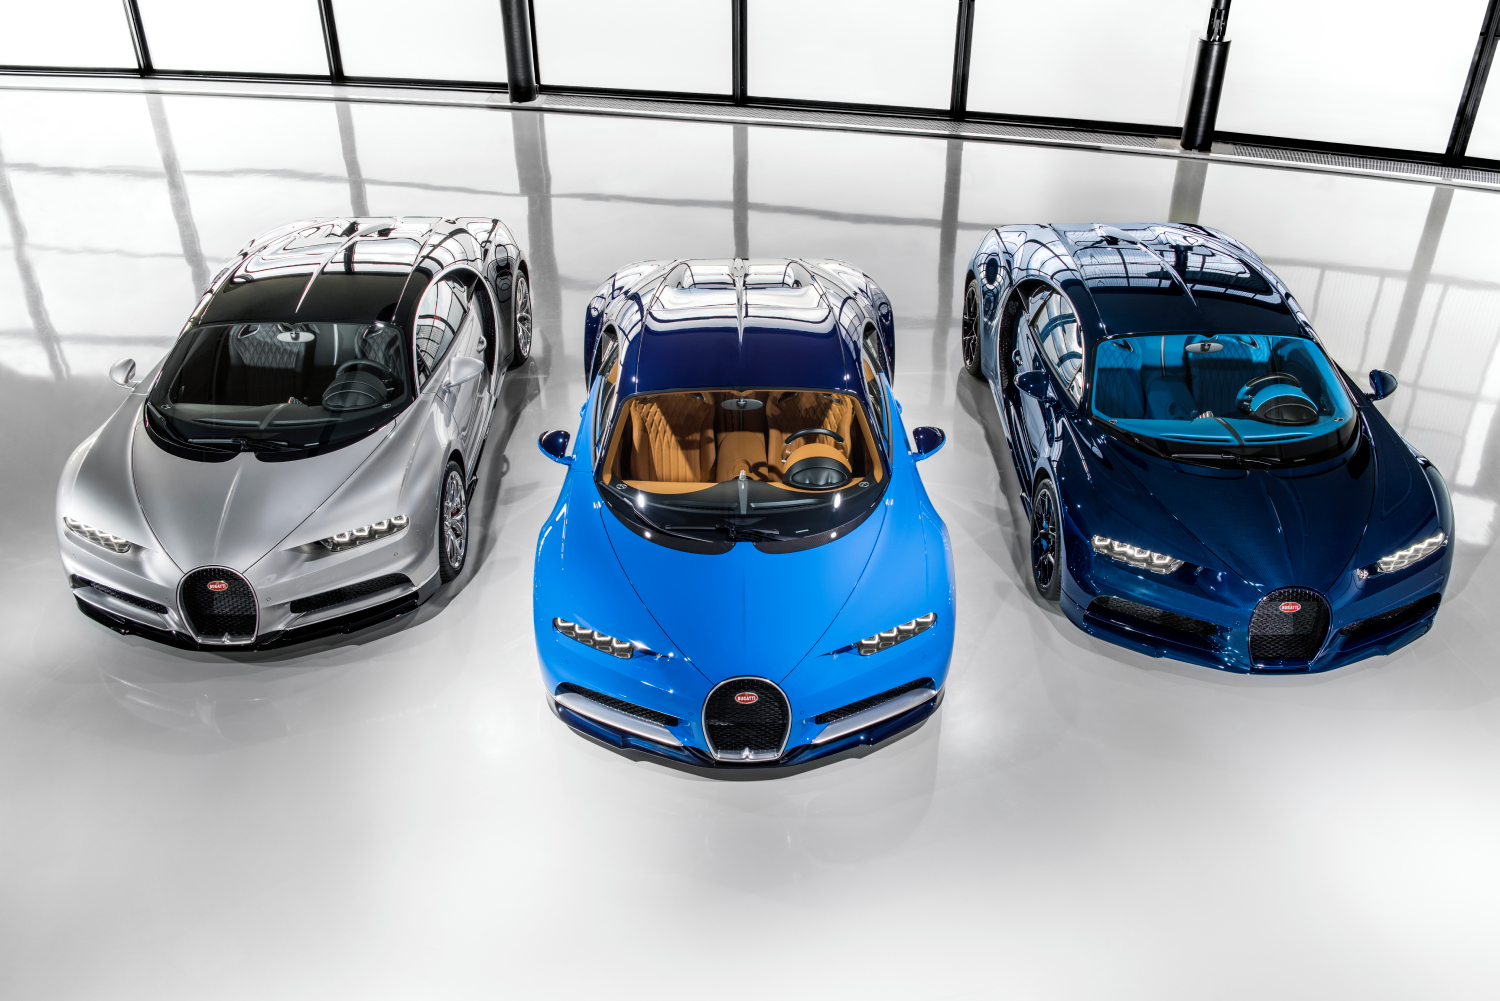 The Bugatti Chiron lineup